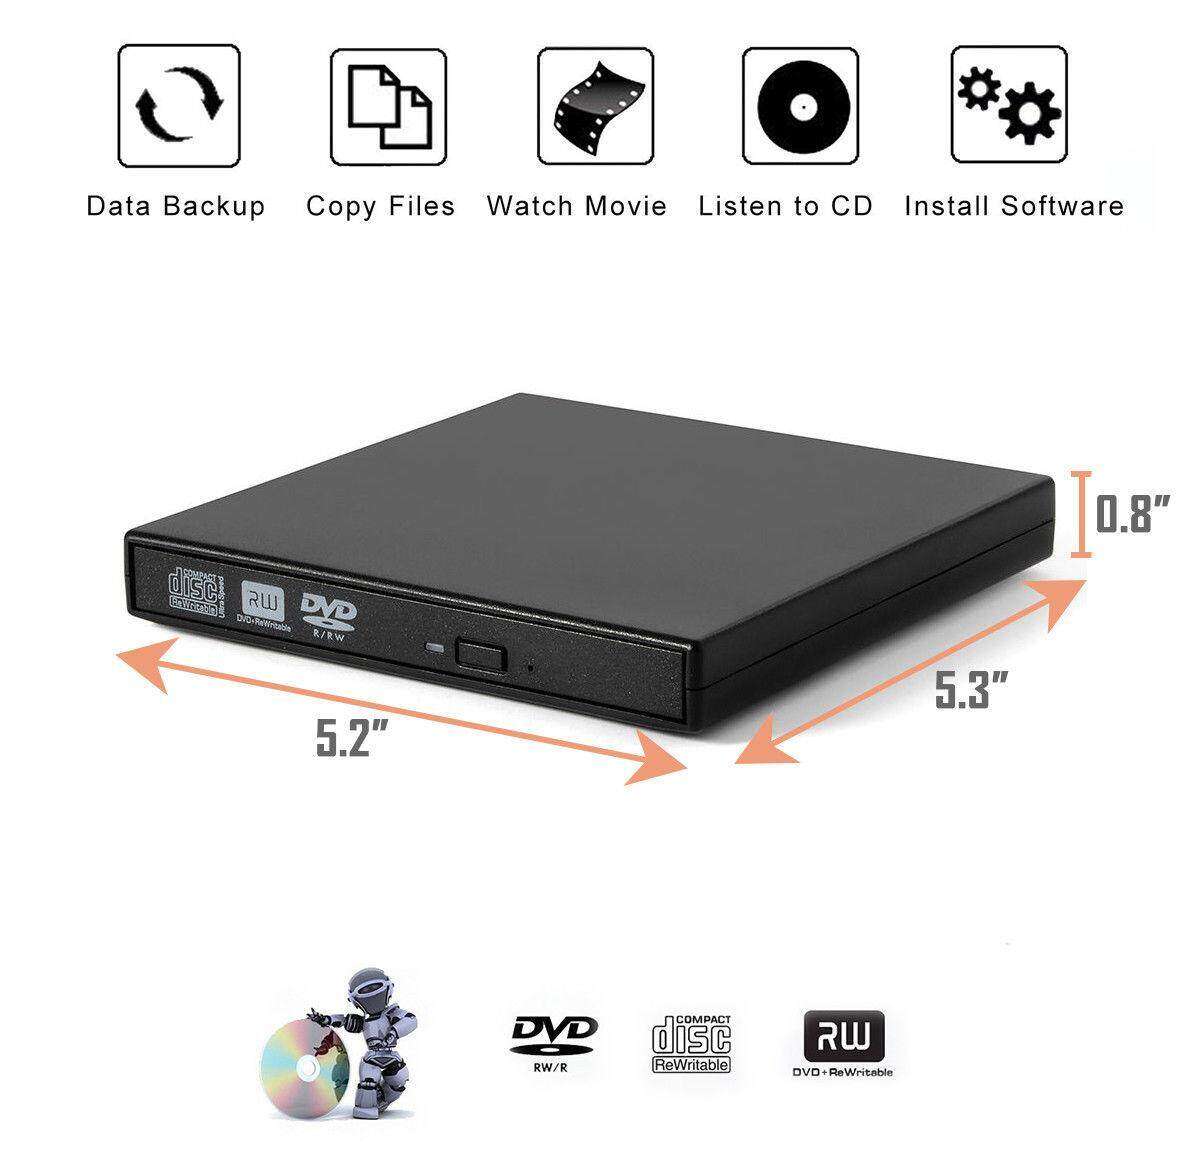 ภาพที่ให้รายละเอียดเกี่ยวกับ EPS เครื่องอ่านแผ่นซีดี DVD เครื่องเล่น DVD Writer External ไม่ต้องลงไดรเวอร์ก็ใช้งานได้เลย CD/DVD-RW ส่งข้อมูลเต็มสปีดด้วย USB 2.0 ได้ External DVD-RW / DVD-Drive